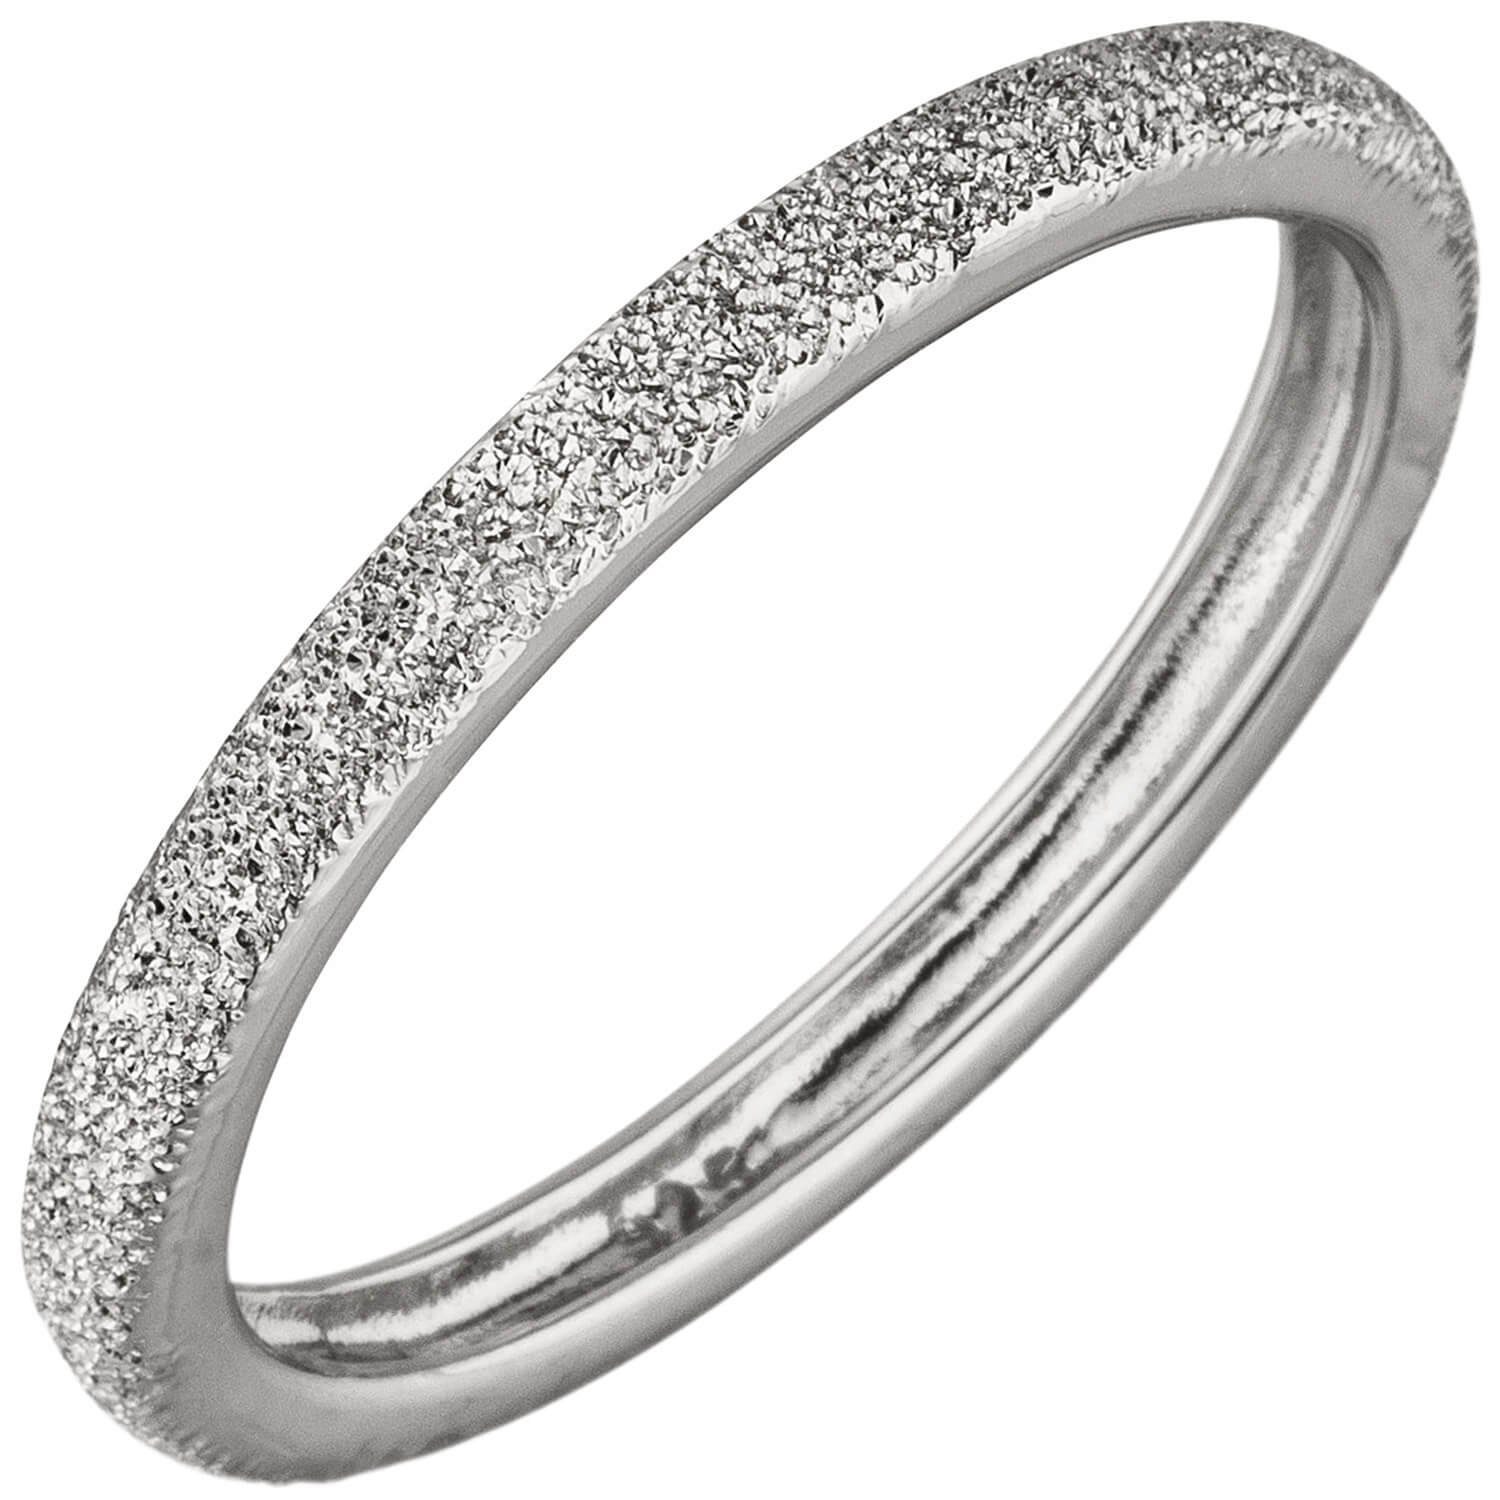 Schmuck Krone Silberring Ring Damenring Silber aus Silber Sternenstaub flach 925 mit schmal, 925 Struktur 2,2mm